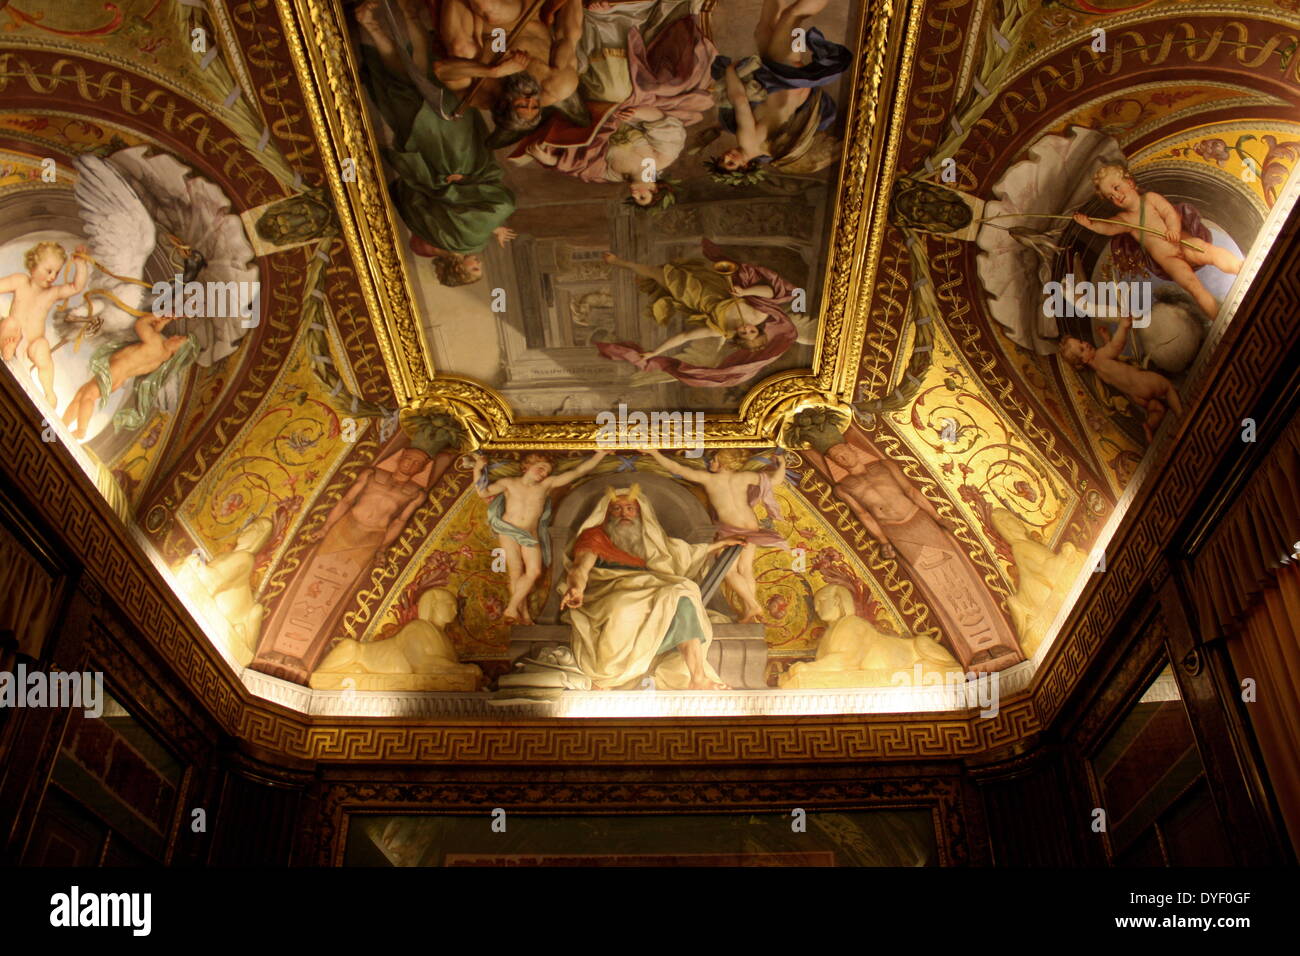 Détail des Musées du Vatican, une immense collection de chefs-d'œuvre de la Renaissance classique, etc. fondée au début du xvie siècle par le Pape Jules II, ils sont considérés comme certains des plus grands musées du monde. Cette image montre une partie du superbe plafond peint. Banque D'Images